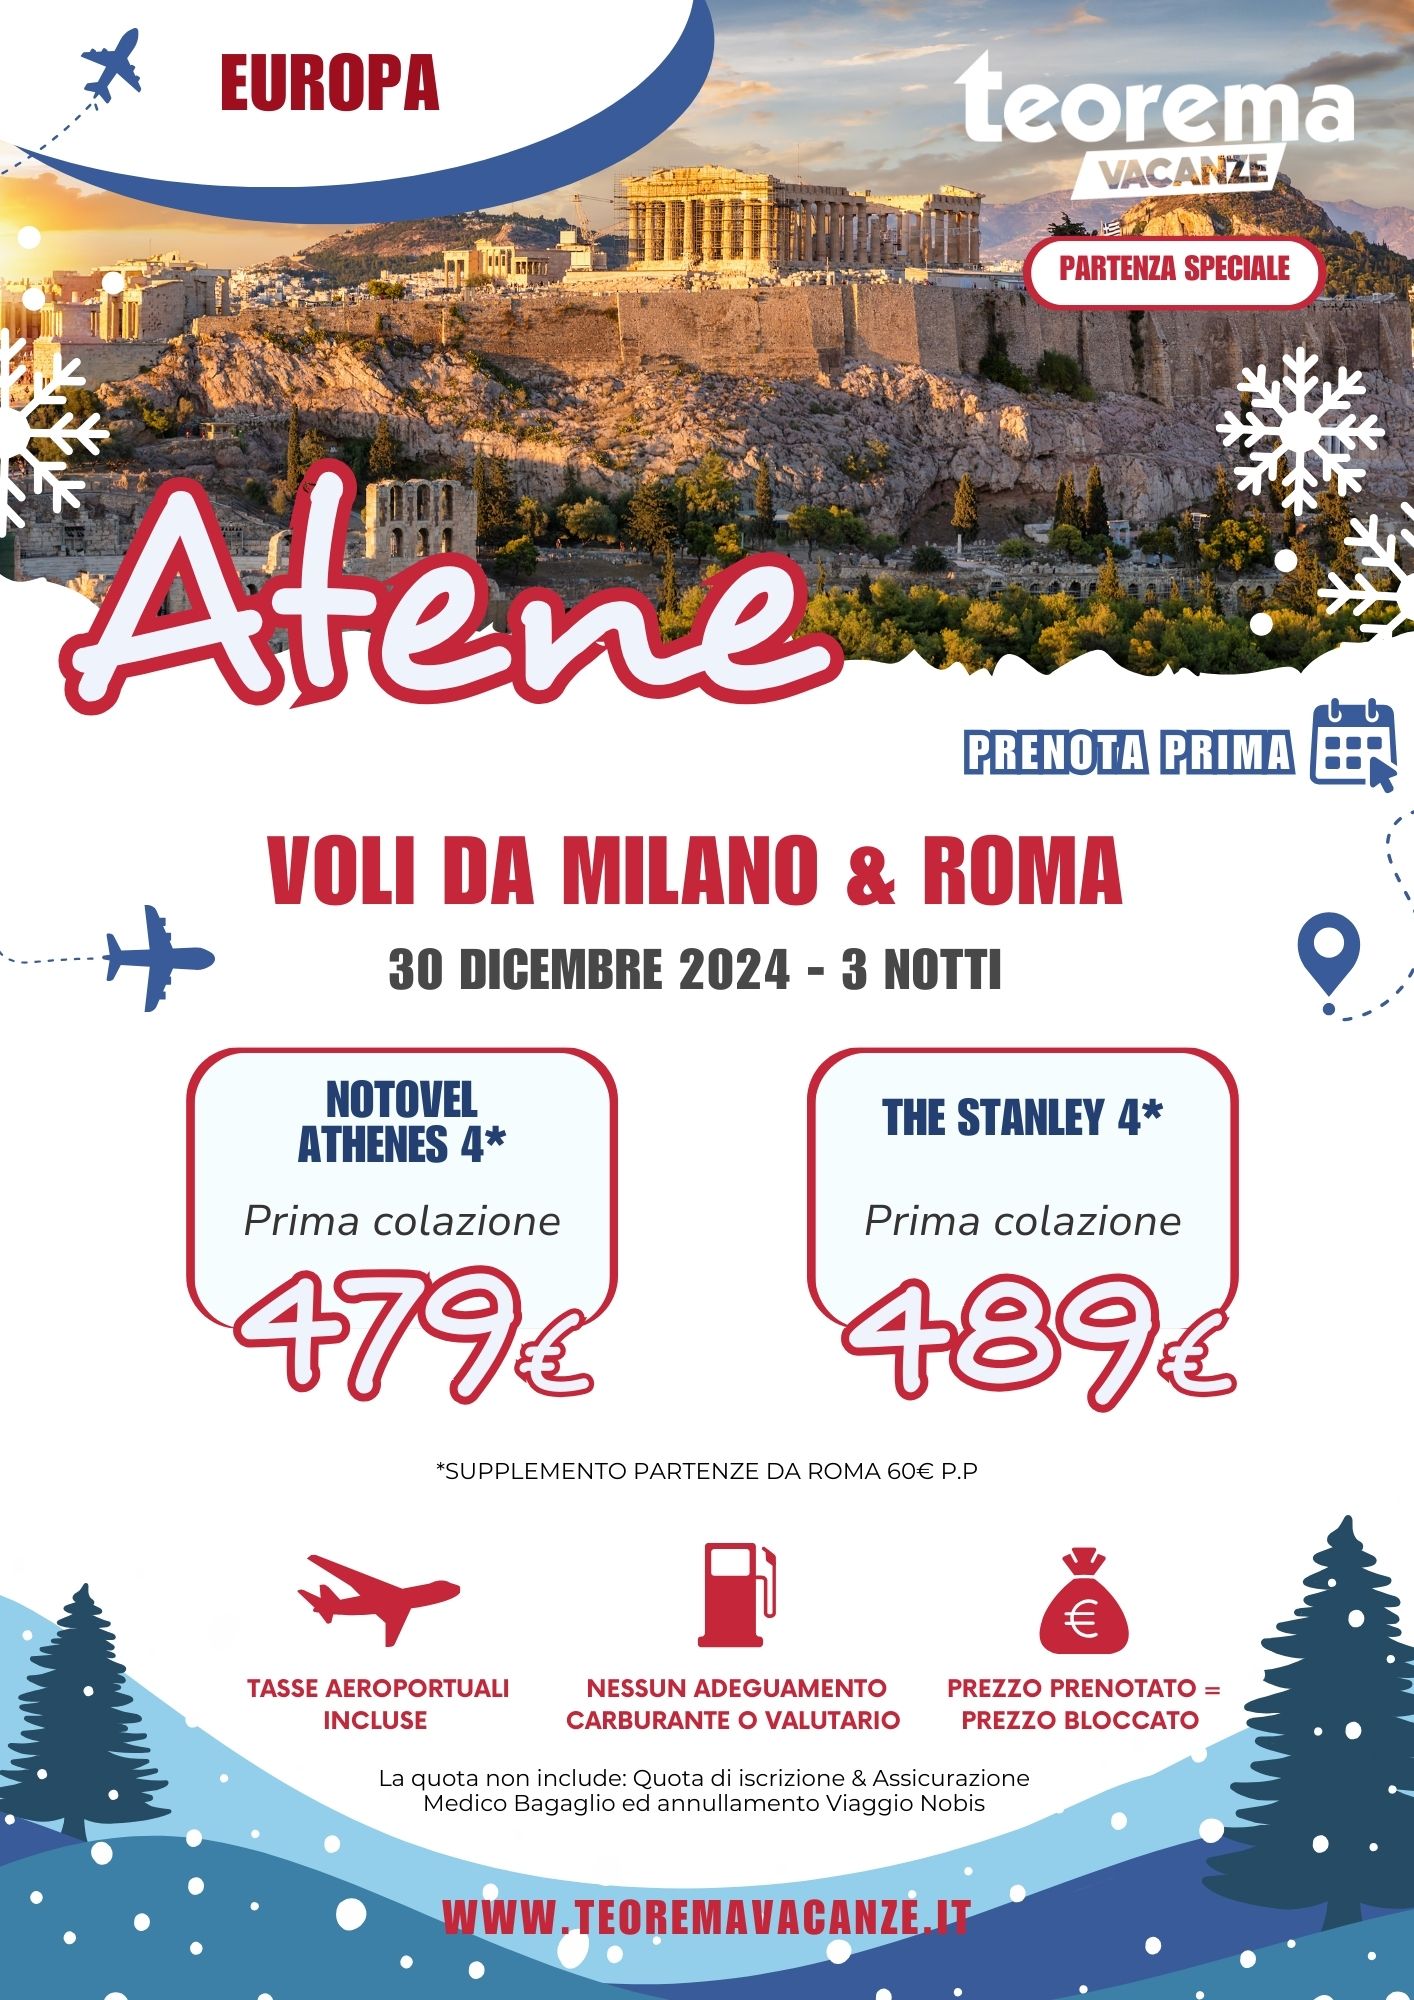 TEOREMA WINTER 2025 - ATENE DA MILANO & ROMA